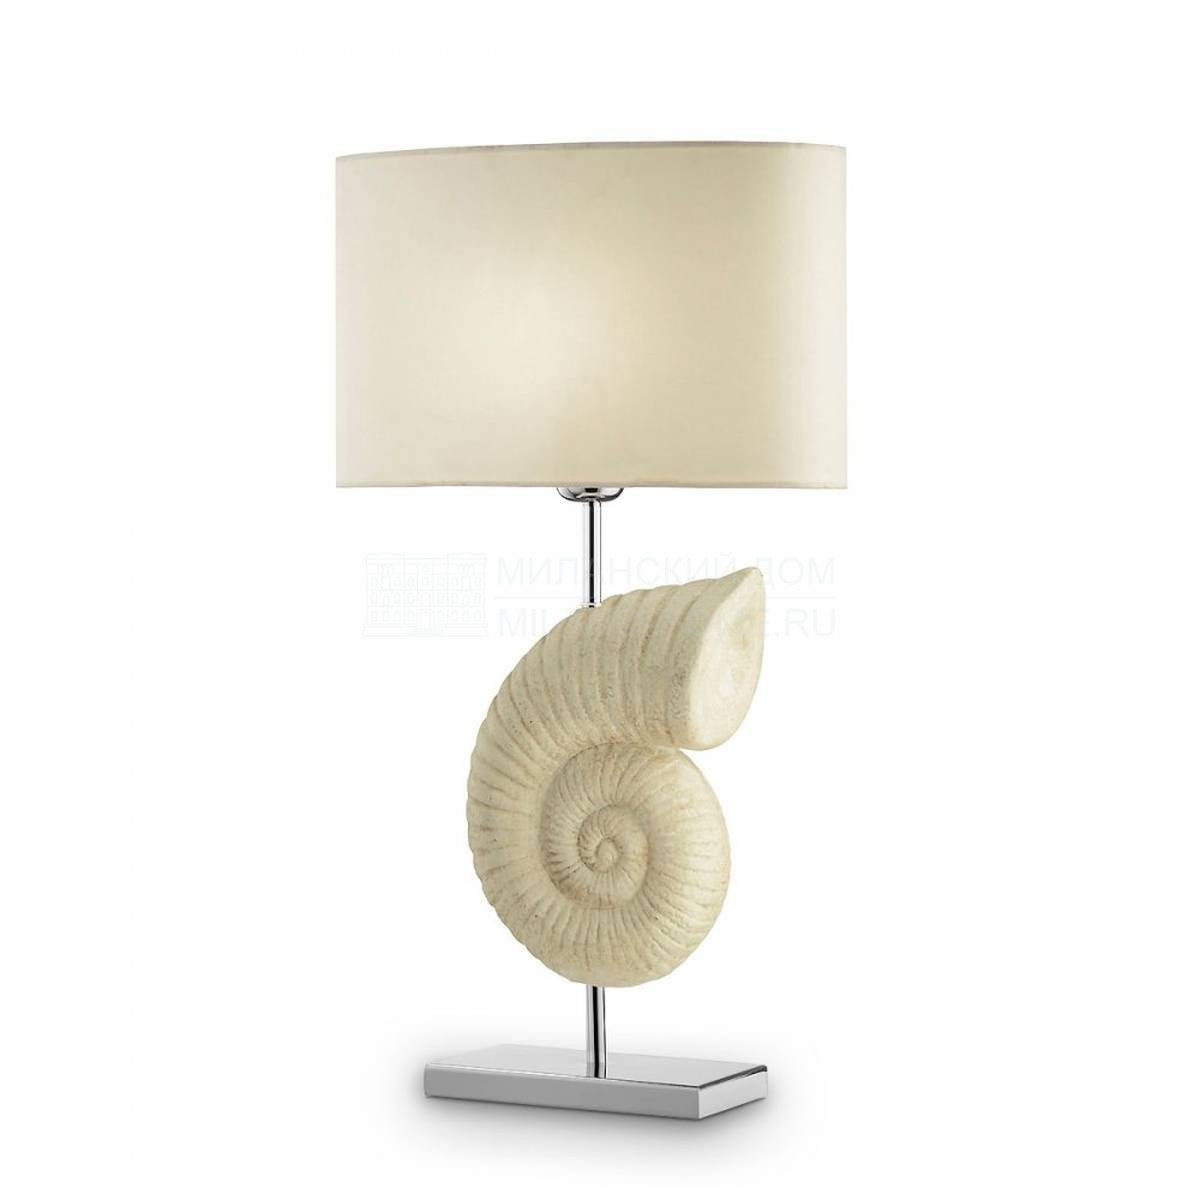 Настольная лампа Nautilus table lamp из Италии фабрики MARIONI